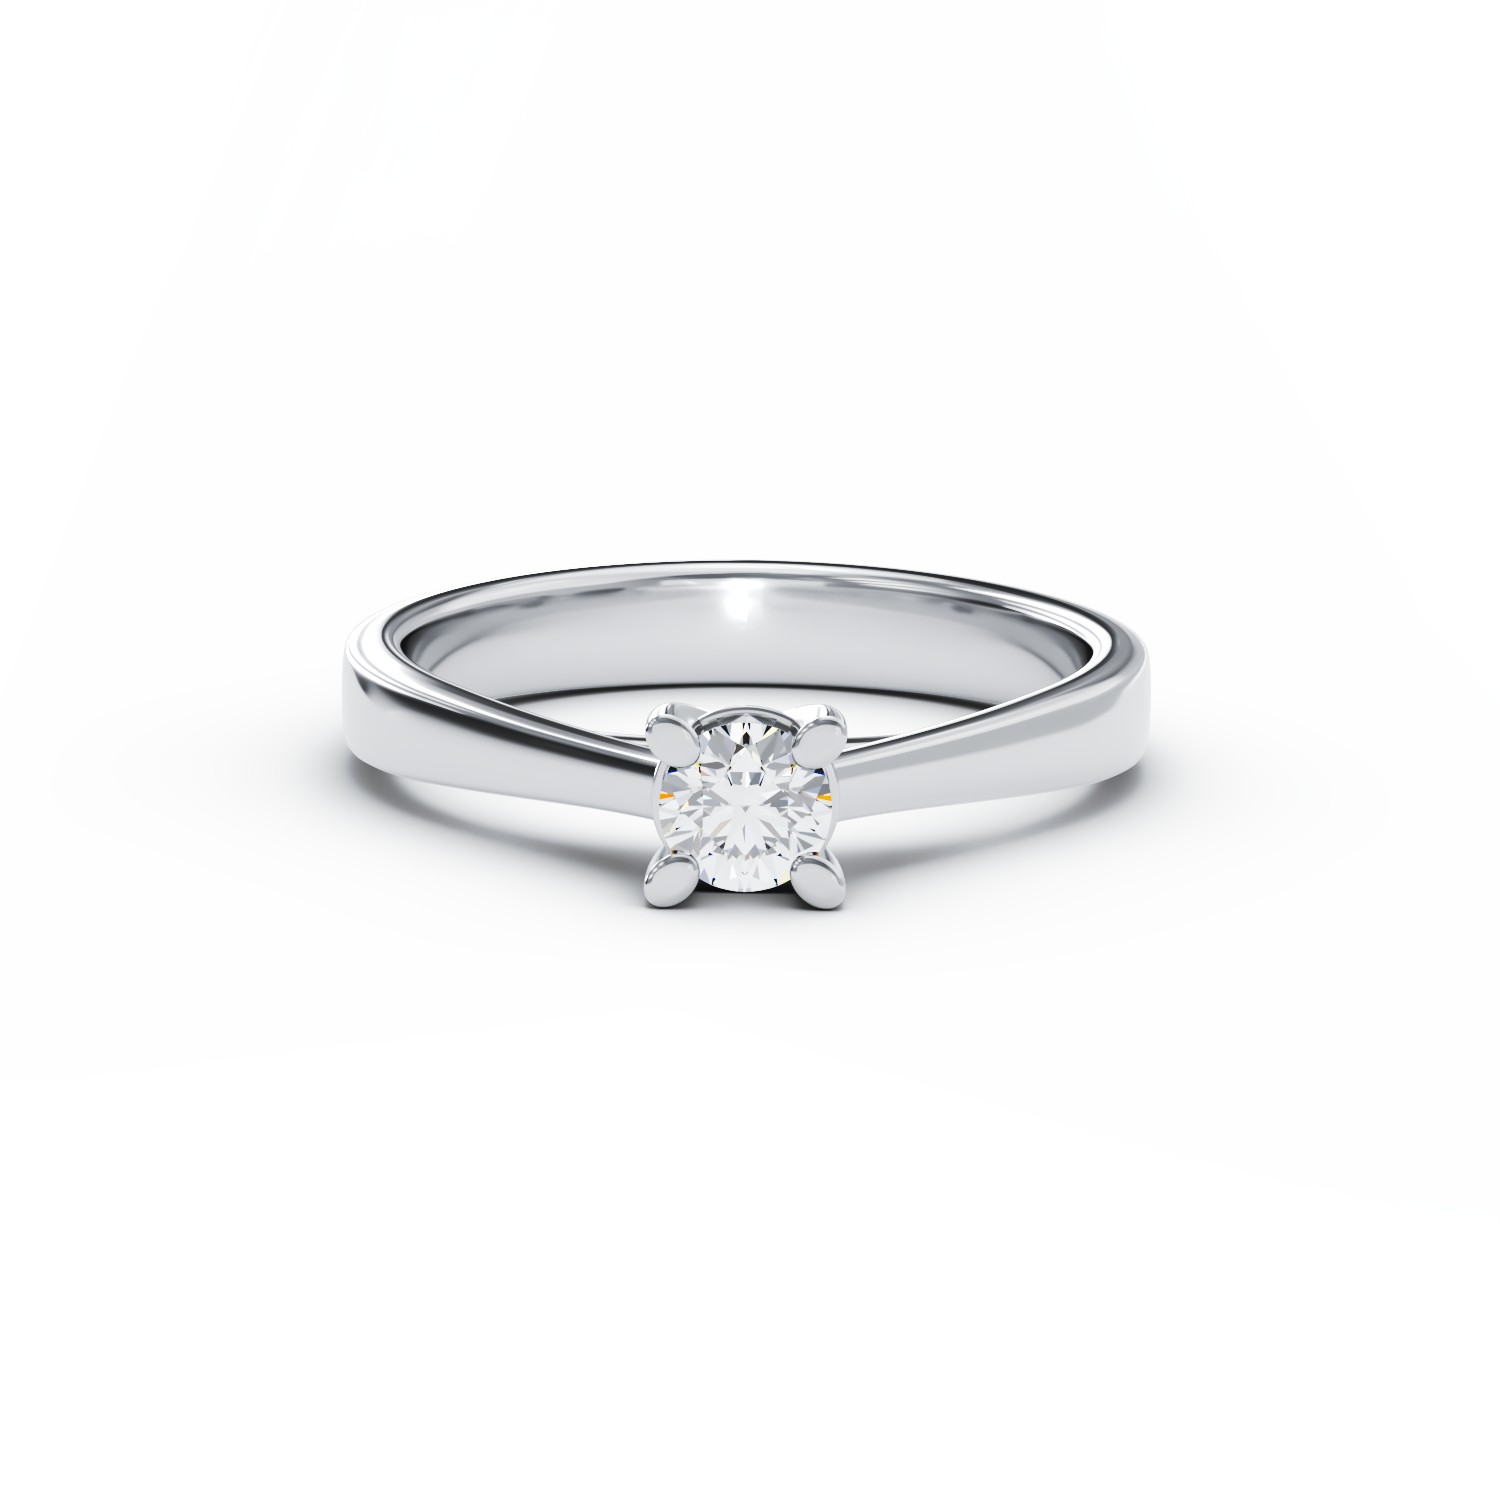 Inel de logodna din aur alb cu un diamant solitaire de 0.15ct